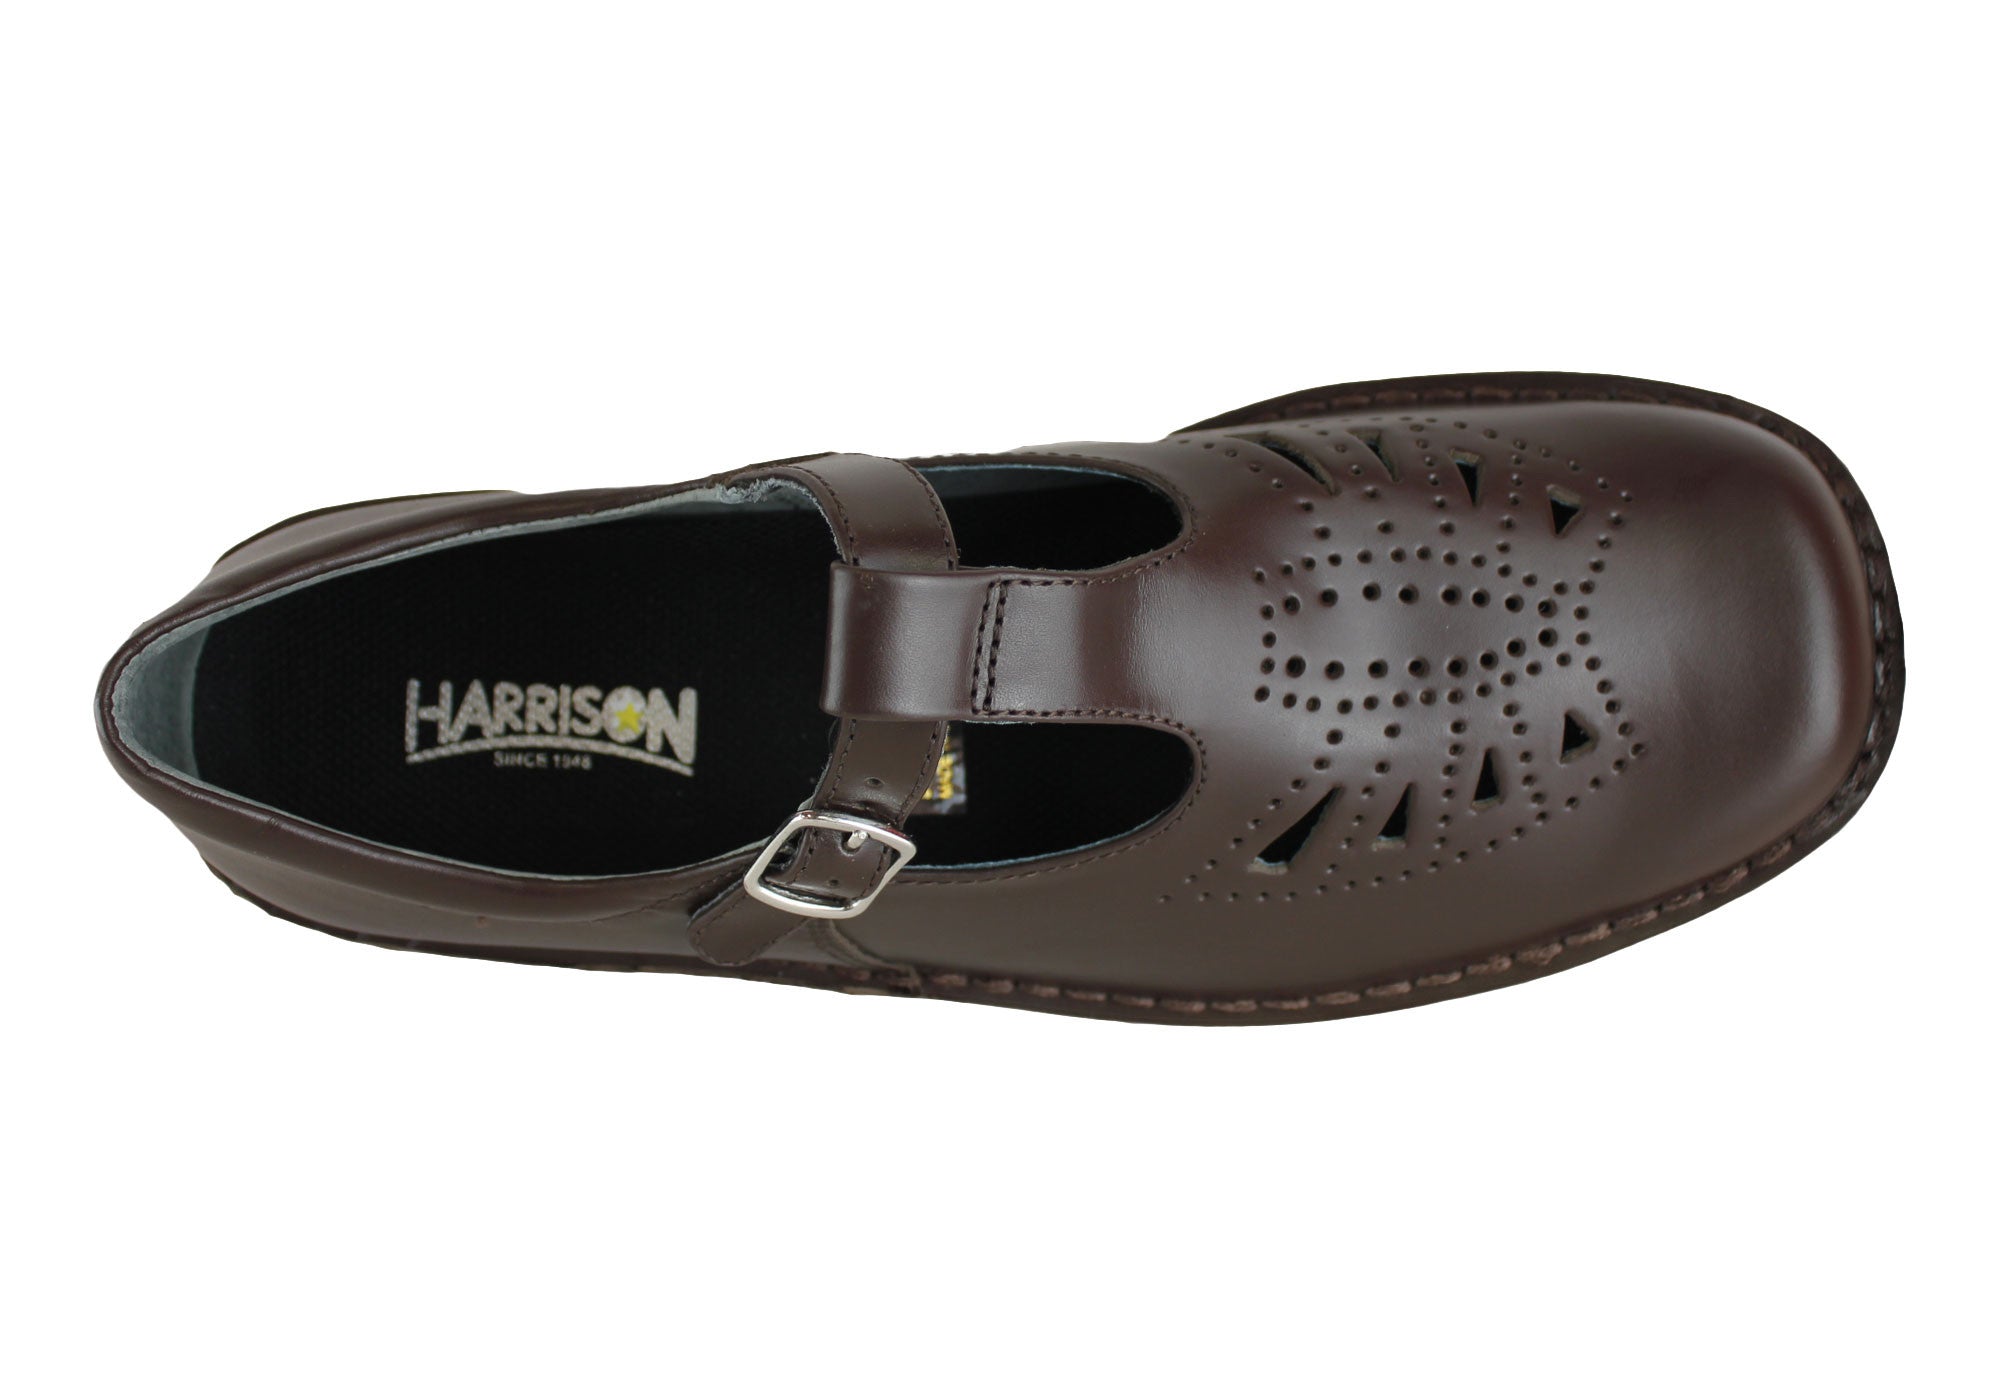 harrison lace up school shoes